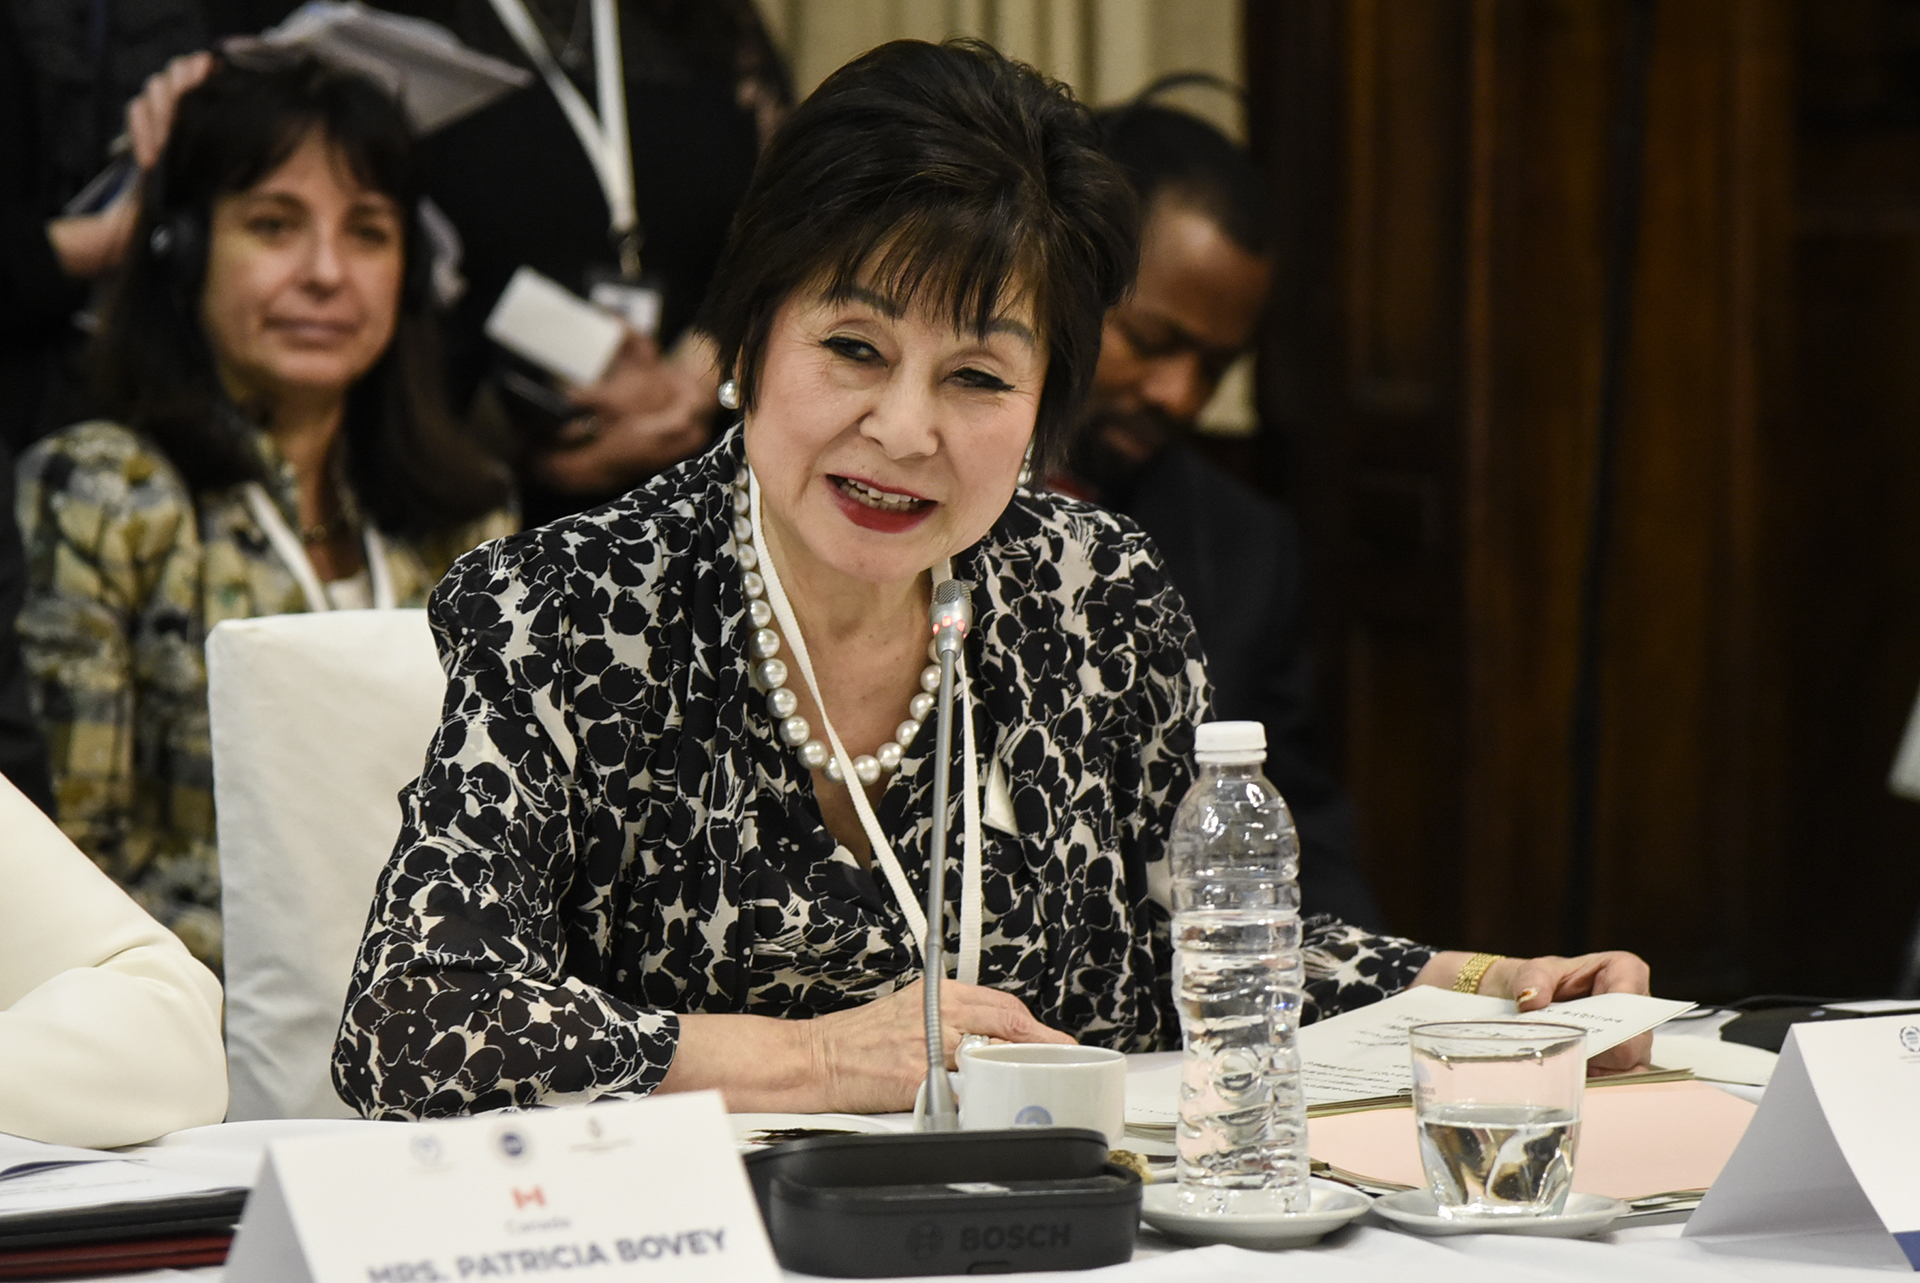 El futuro laboral, la corrupción y el empoderamiento de la mujer: ejes en la cumbre internacional